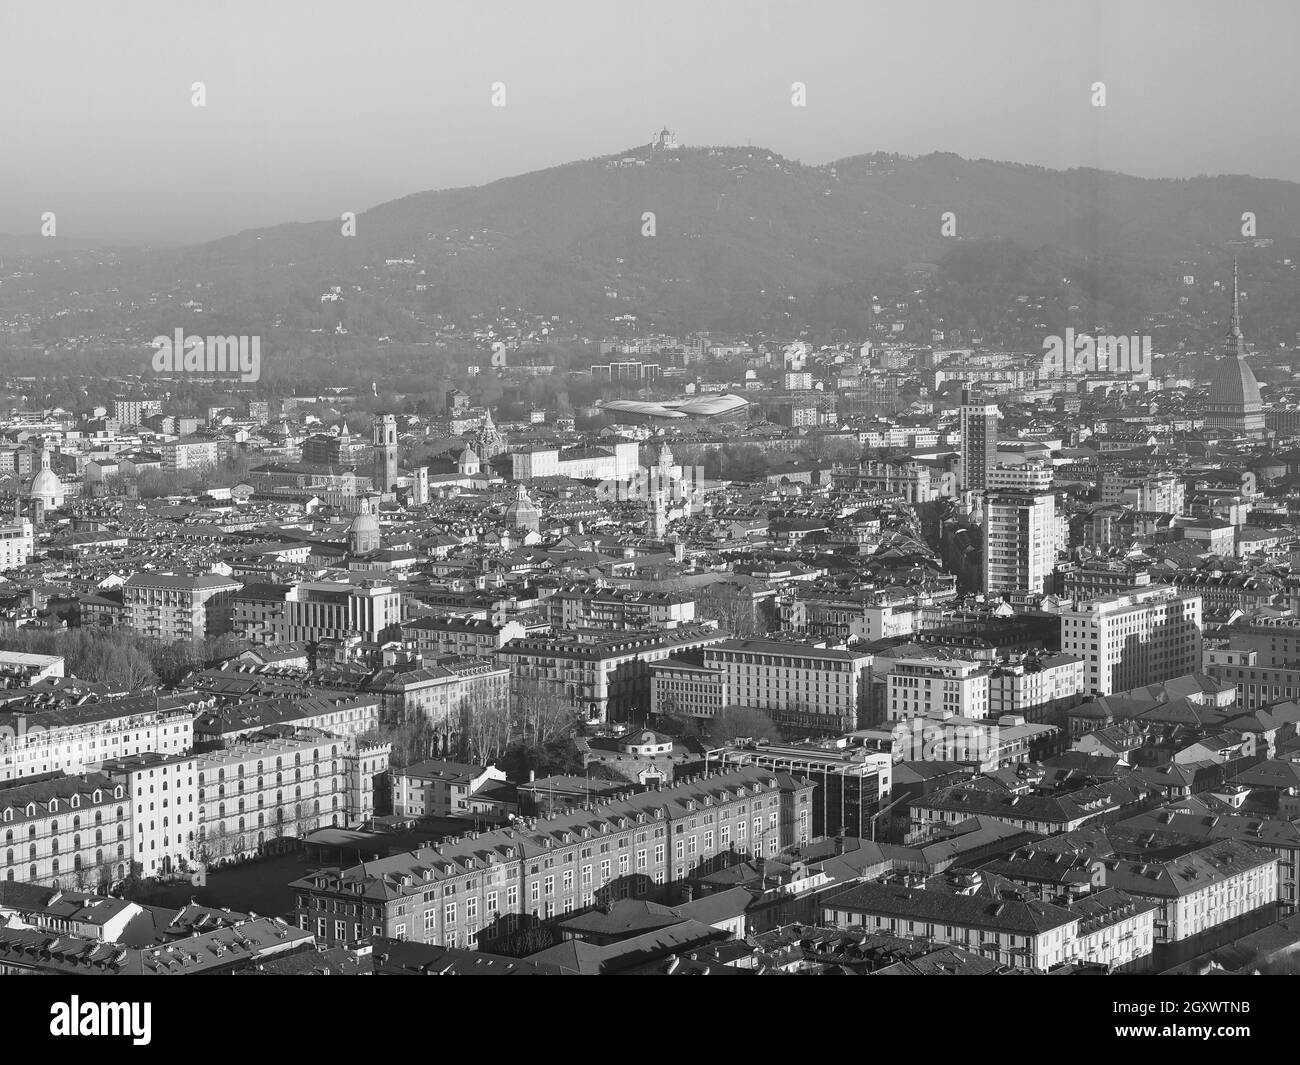 Vista aérea de la ciudad de Turín, Italia, con la plaza Piazza Castello en blanco y negro Foto de stock